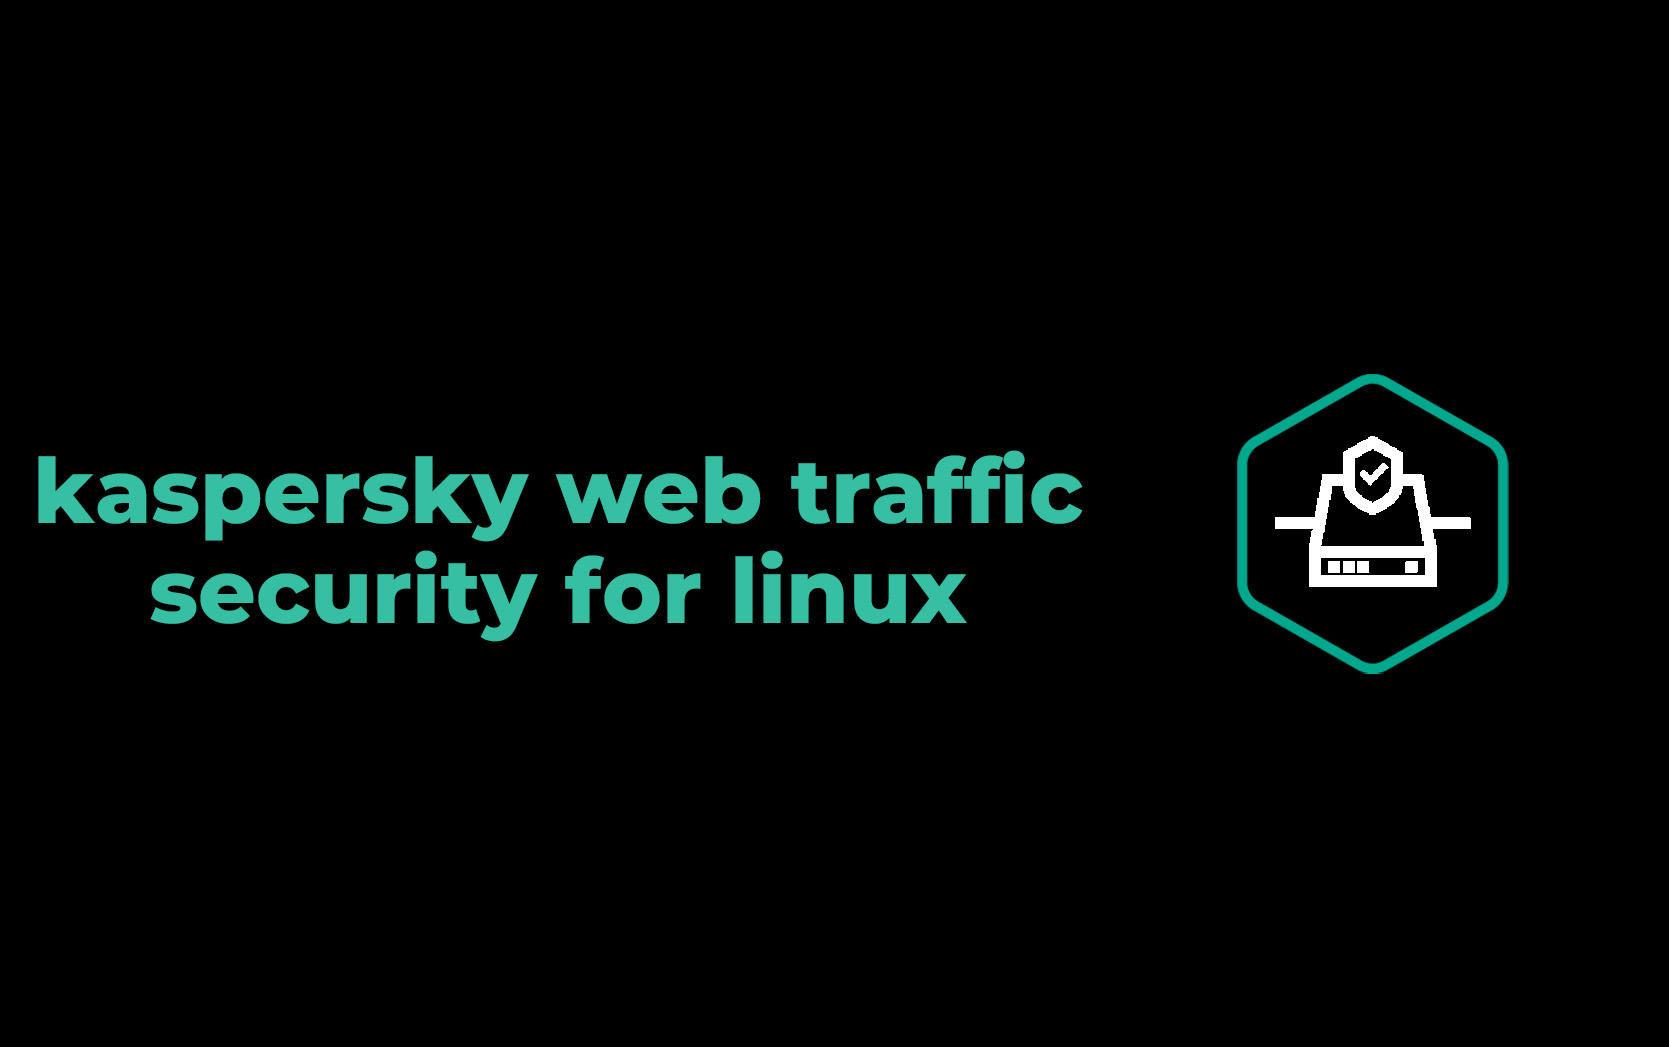 محصول kaspersky web traffic security for linux کسپرسکی برای لینوکس